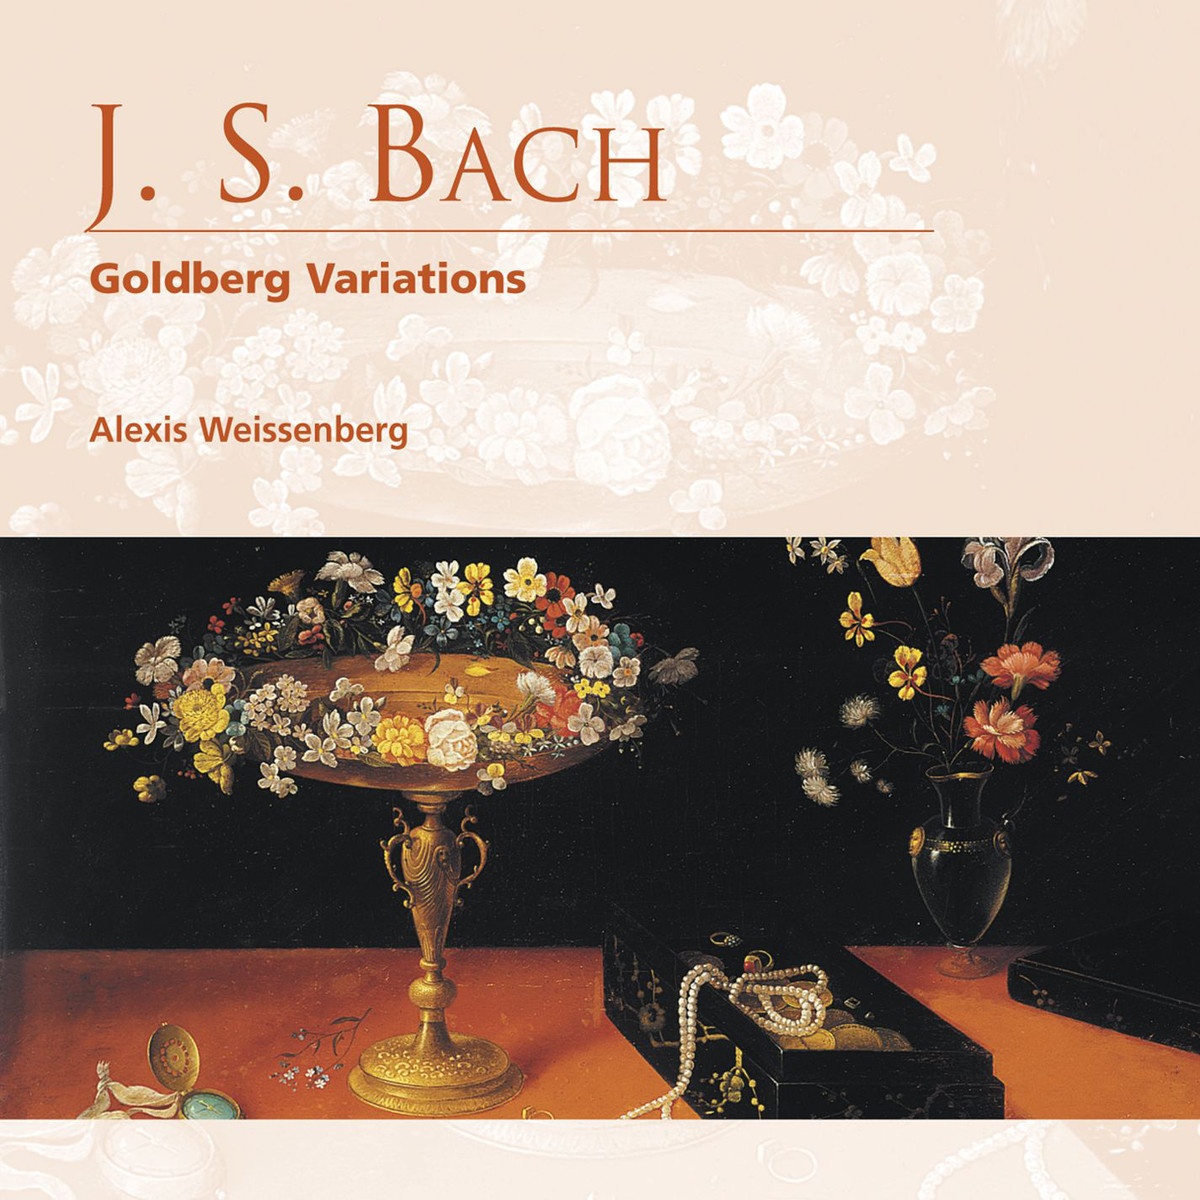 Goldberg Variations BWV988: Variation 22 - Alla breve